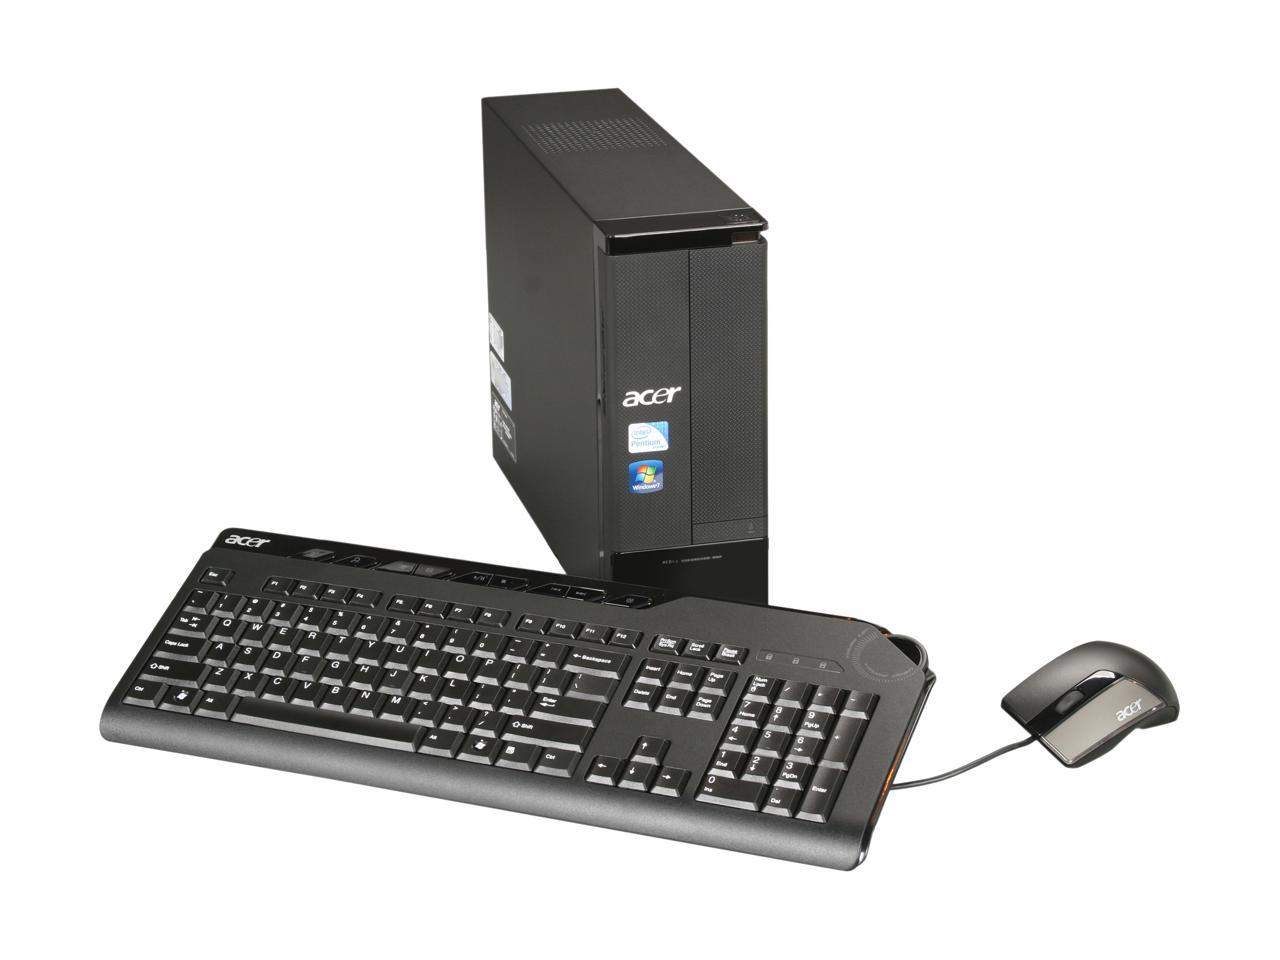 Acer Desktop PC Aspire AX3910-U4022 (PT.SED02.016) Pentium E5800 (3.20